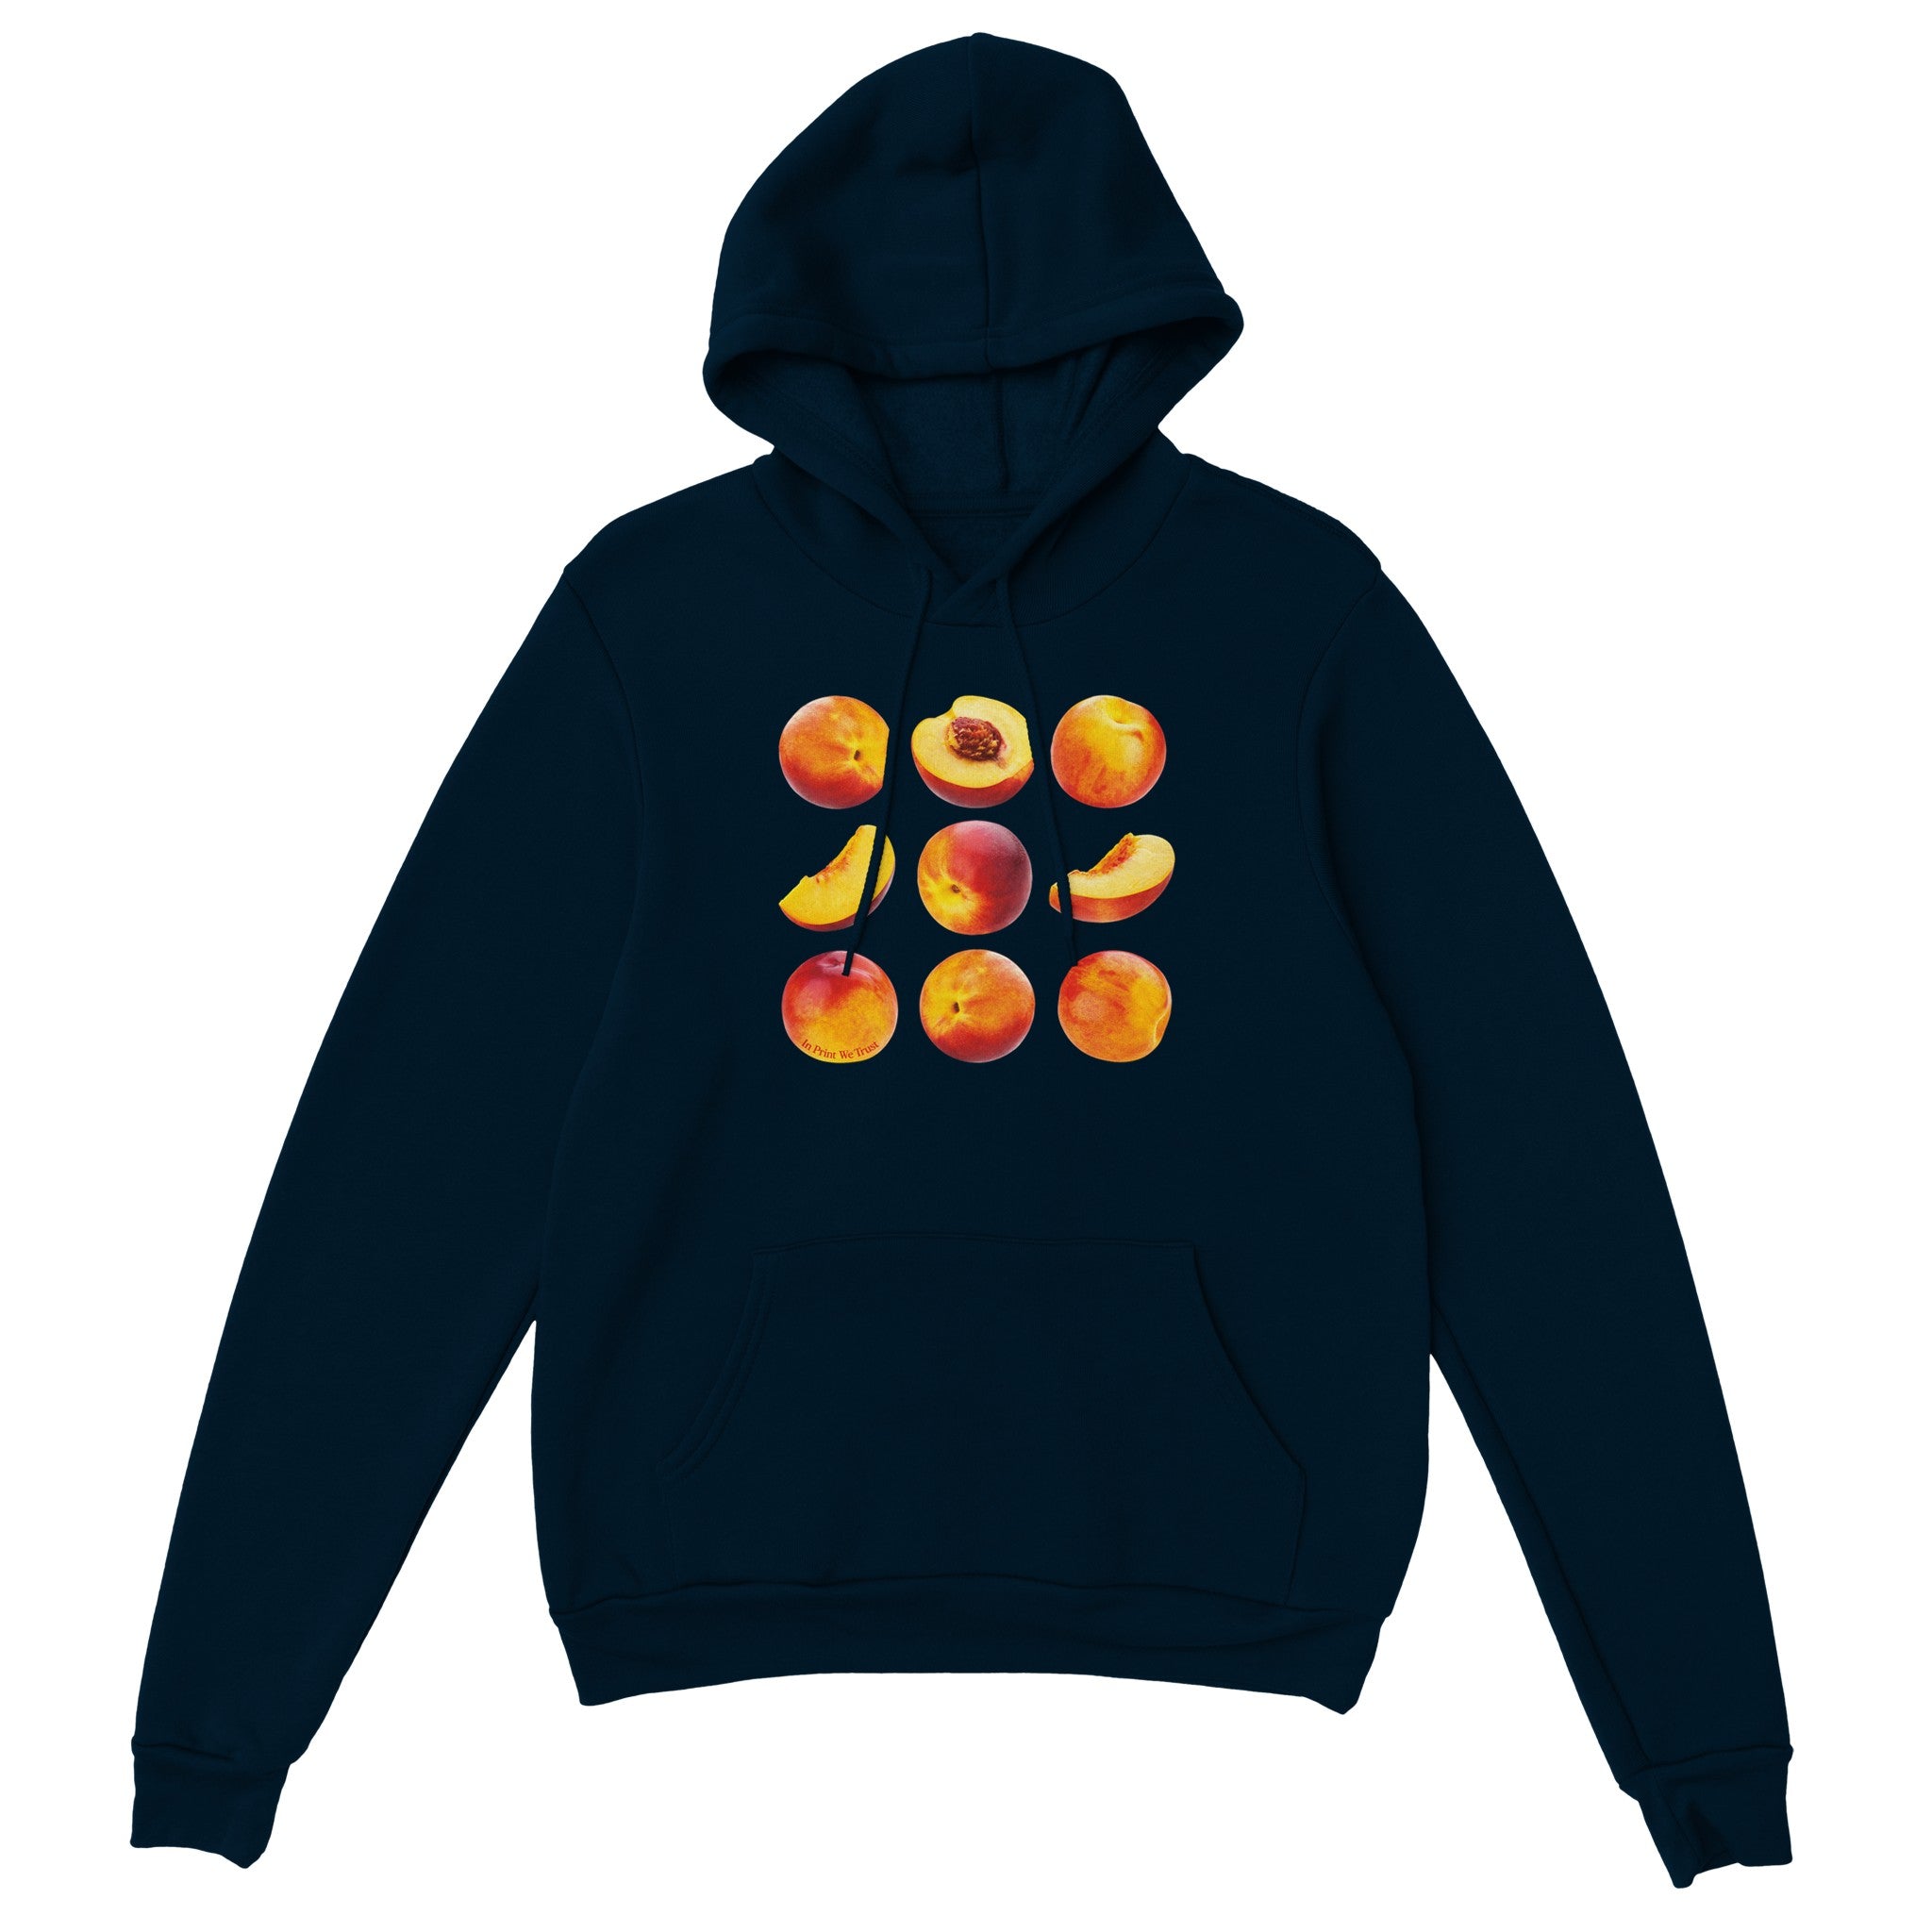 'Just Peachy' hoodie - In Print We Trust